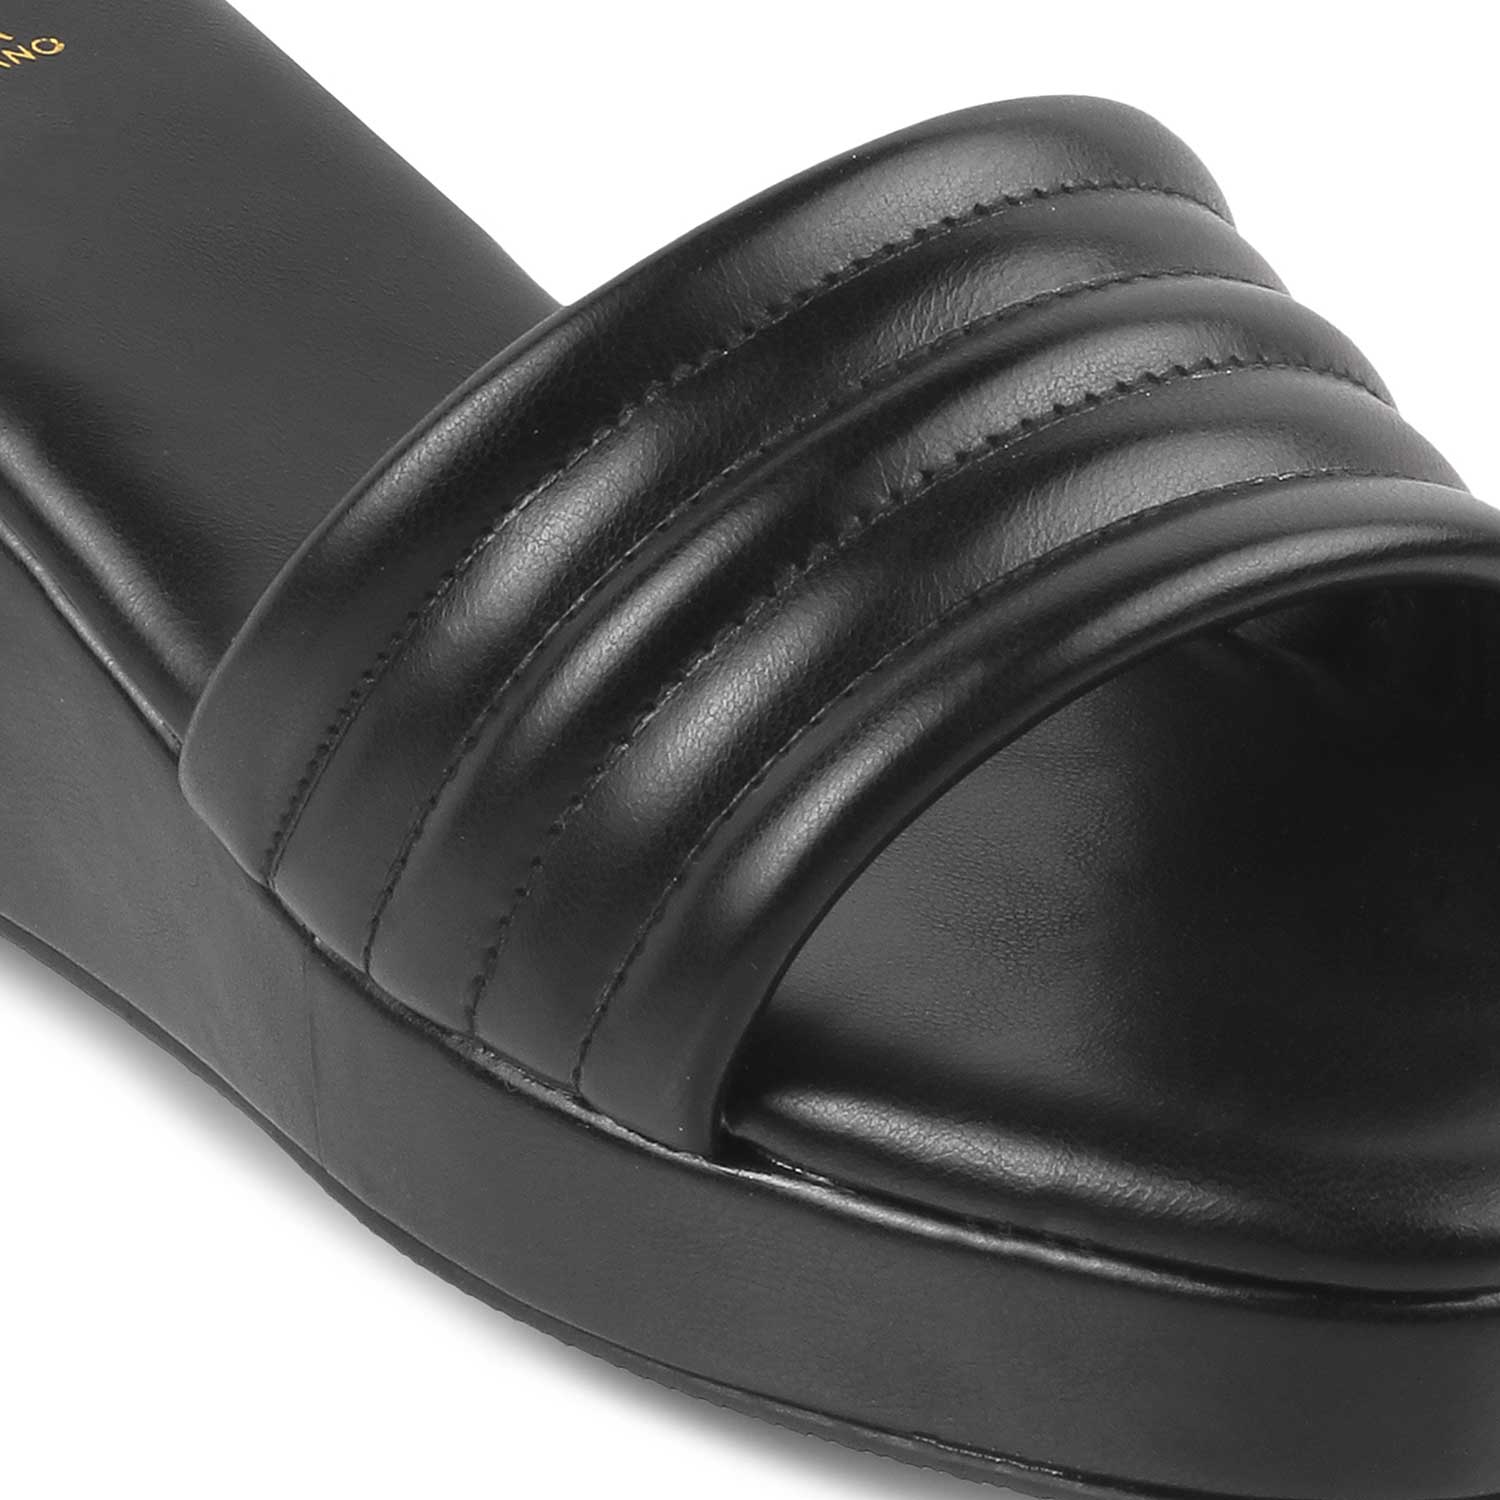 The Skyler Black Women's Casual Wedge Heel Sandals Tresmode - Tresmode